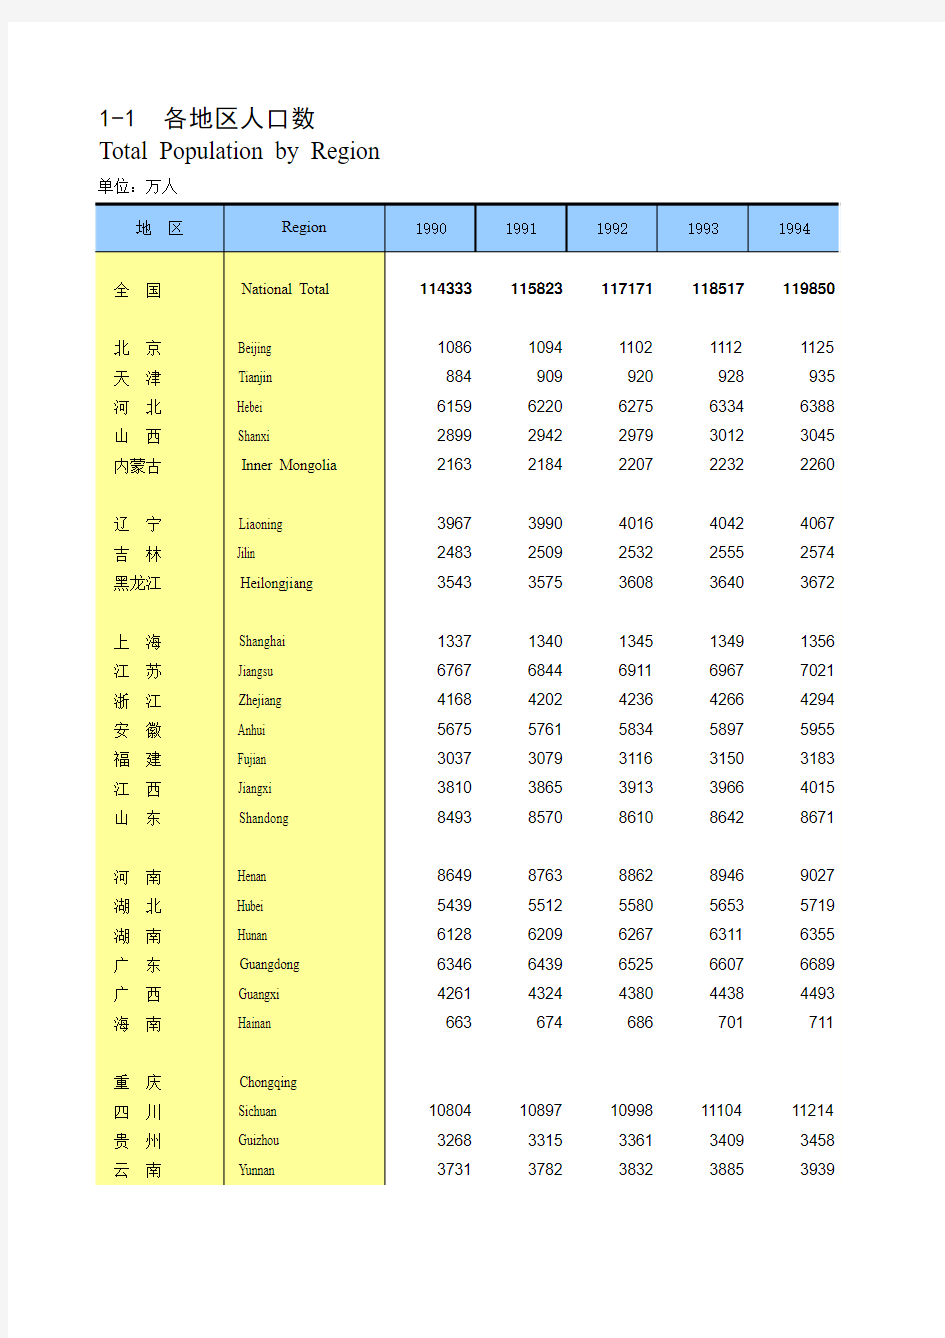 中国统计年鉴-各地区人口数